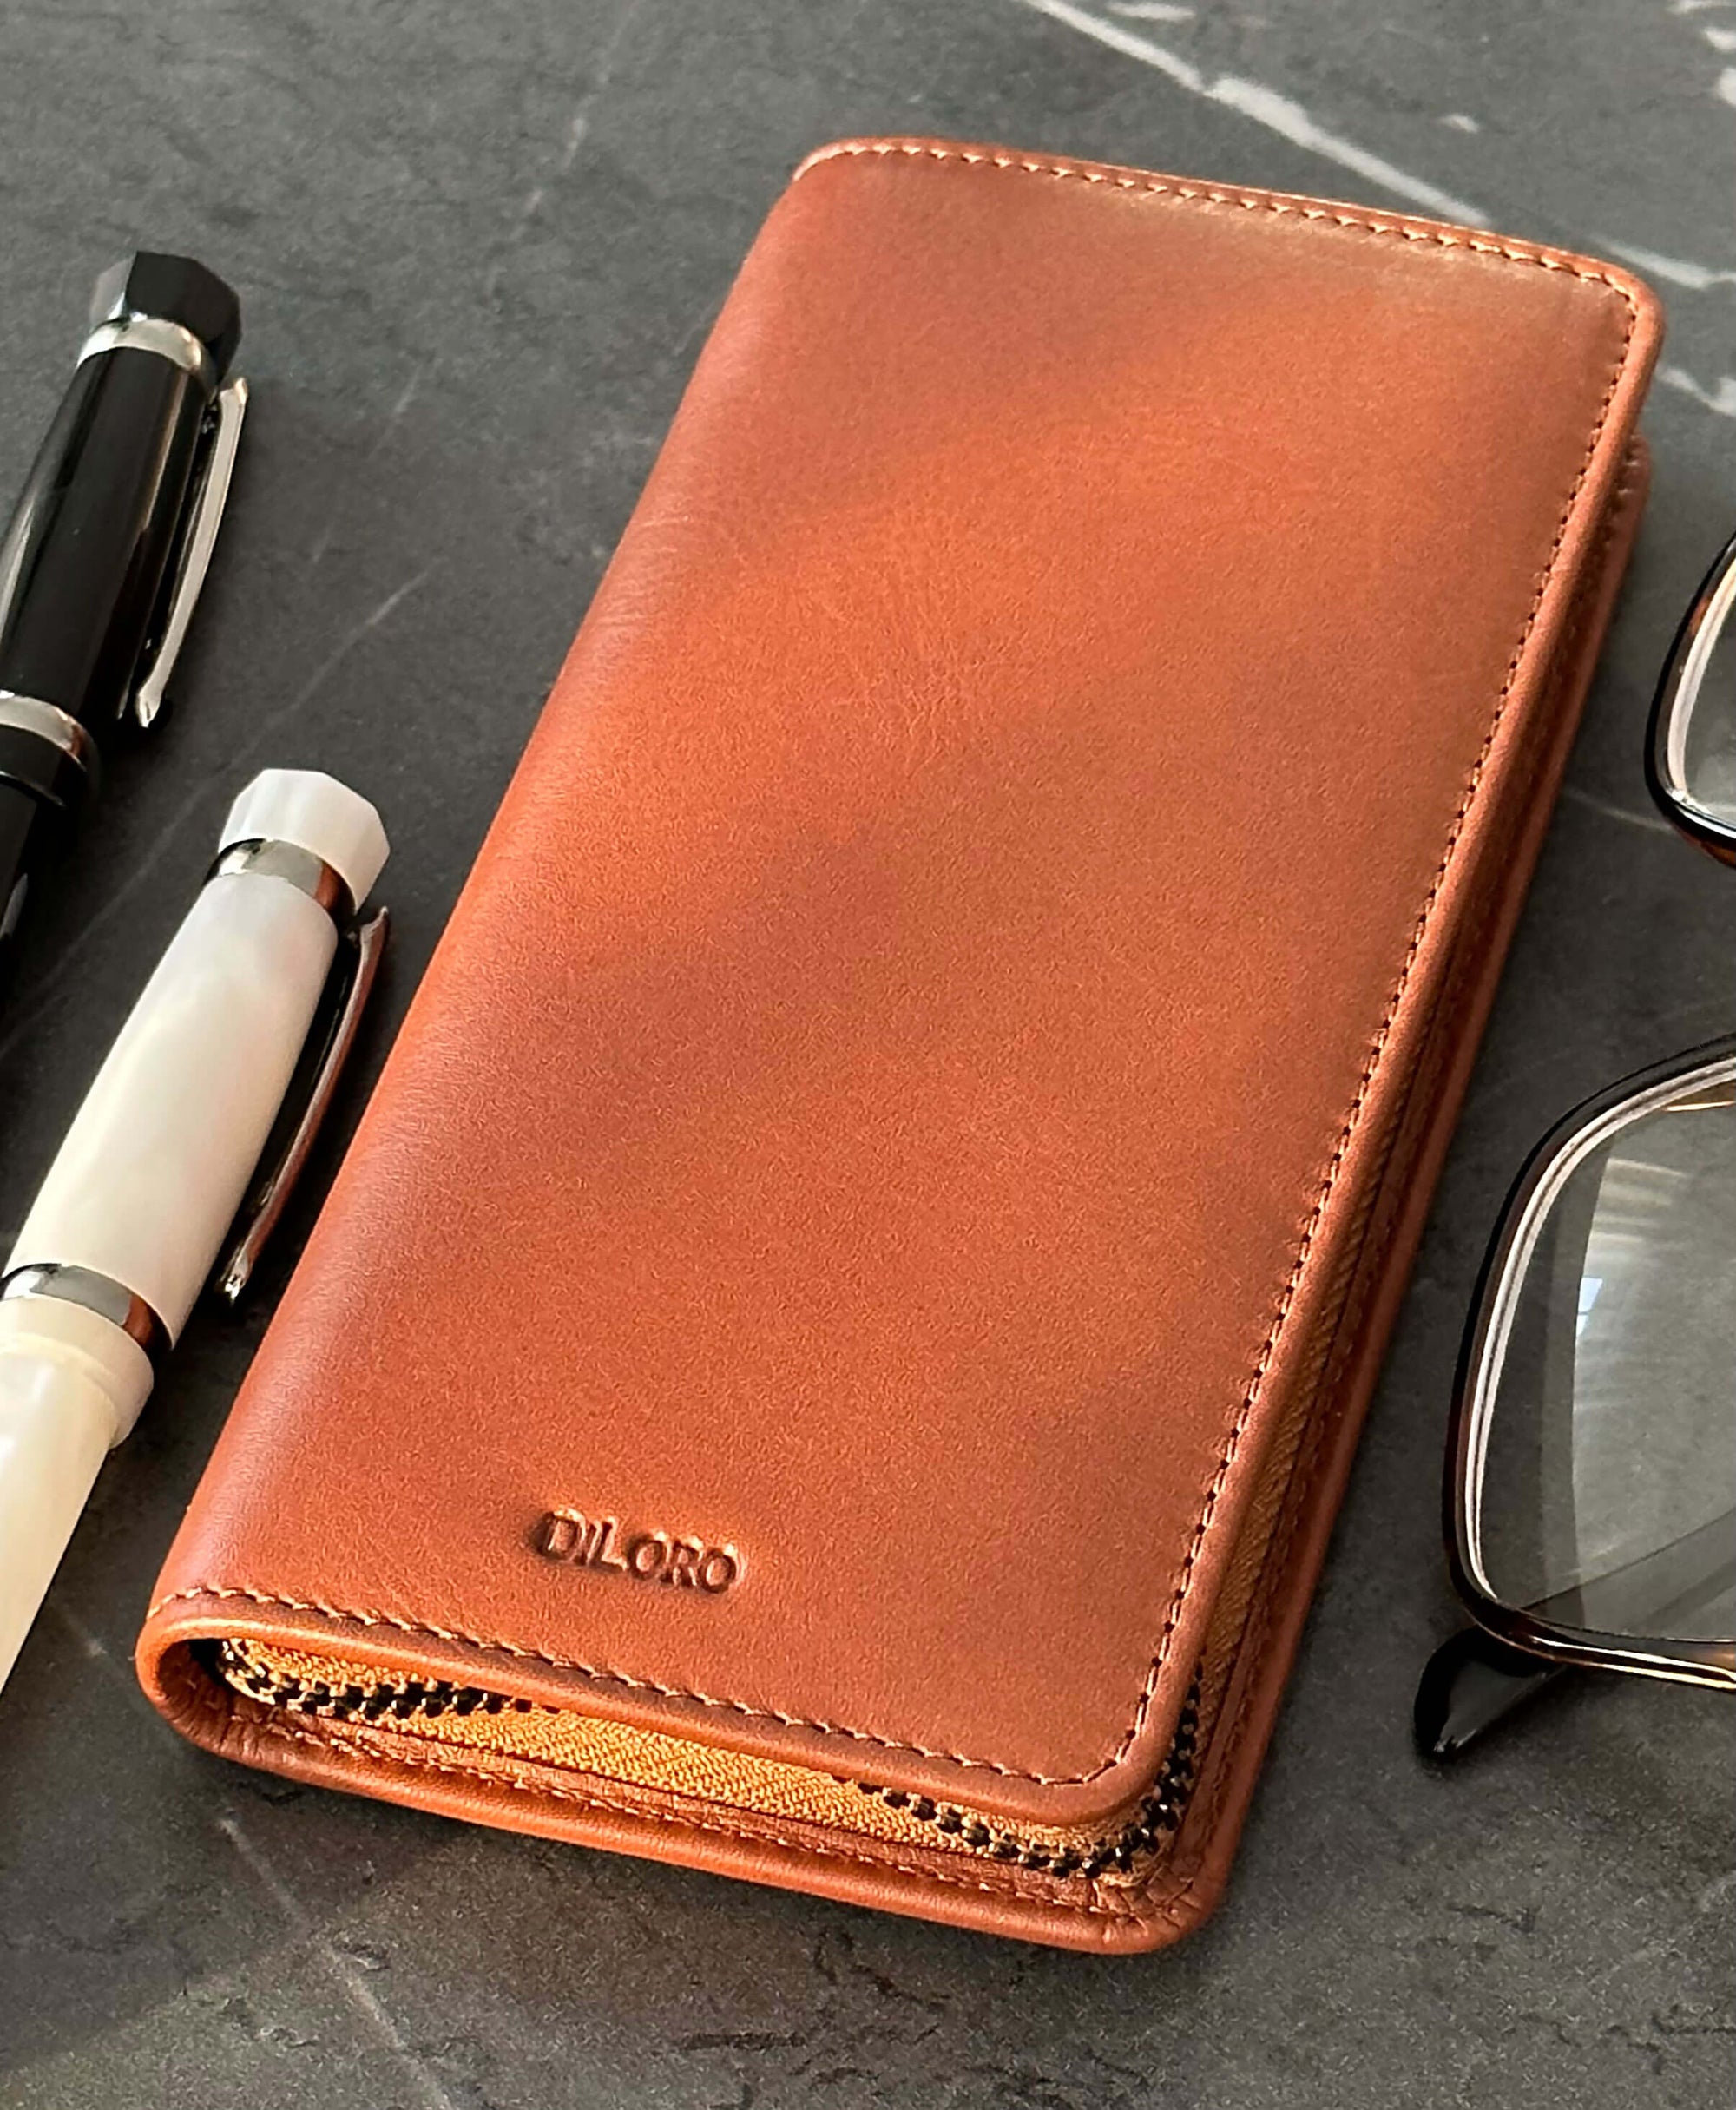 DiLoro Leather Zippered Triple/Quad Pen Case Premium Full Grain